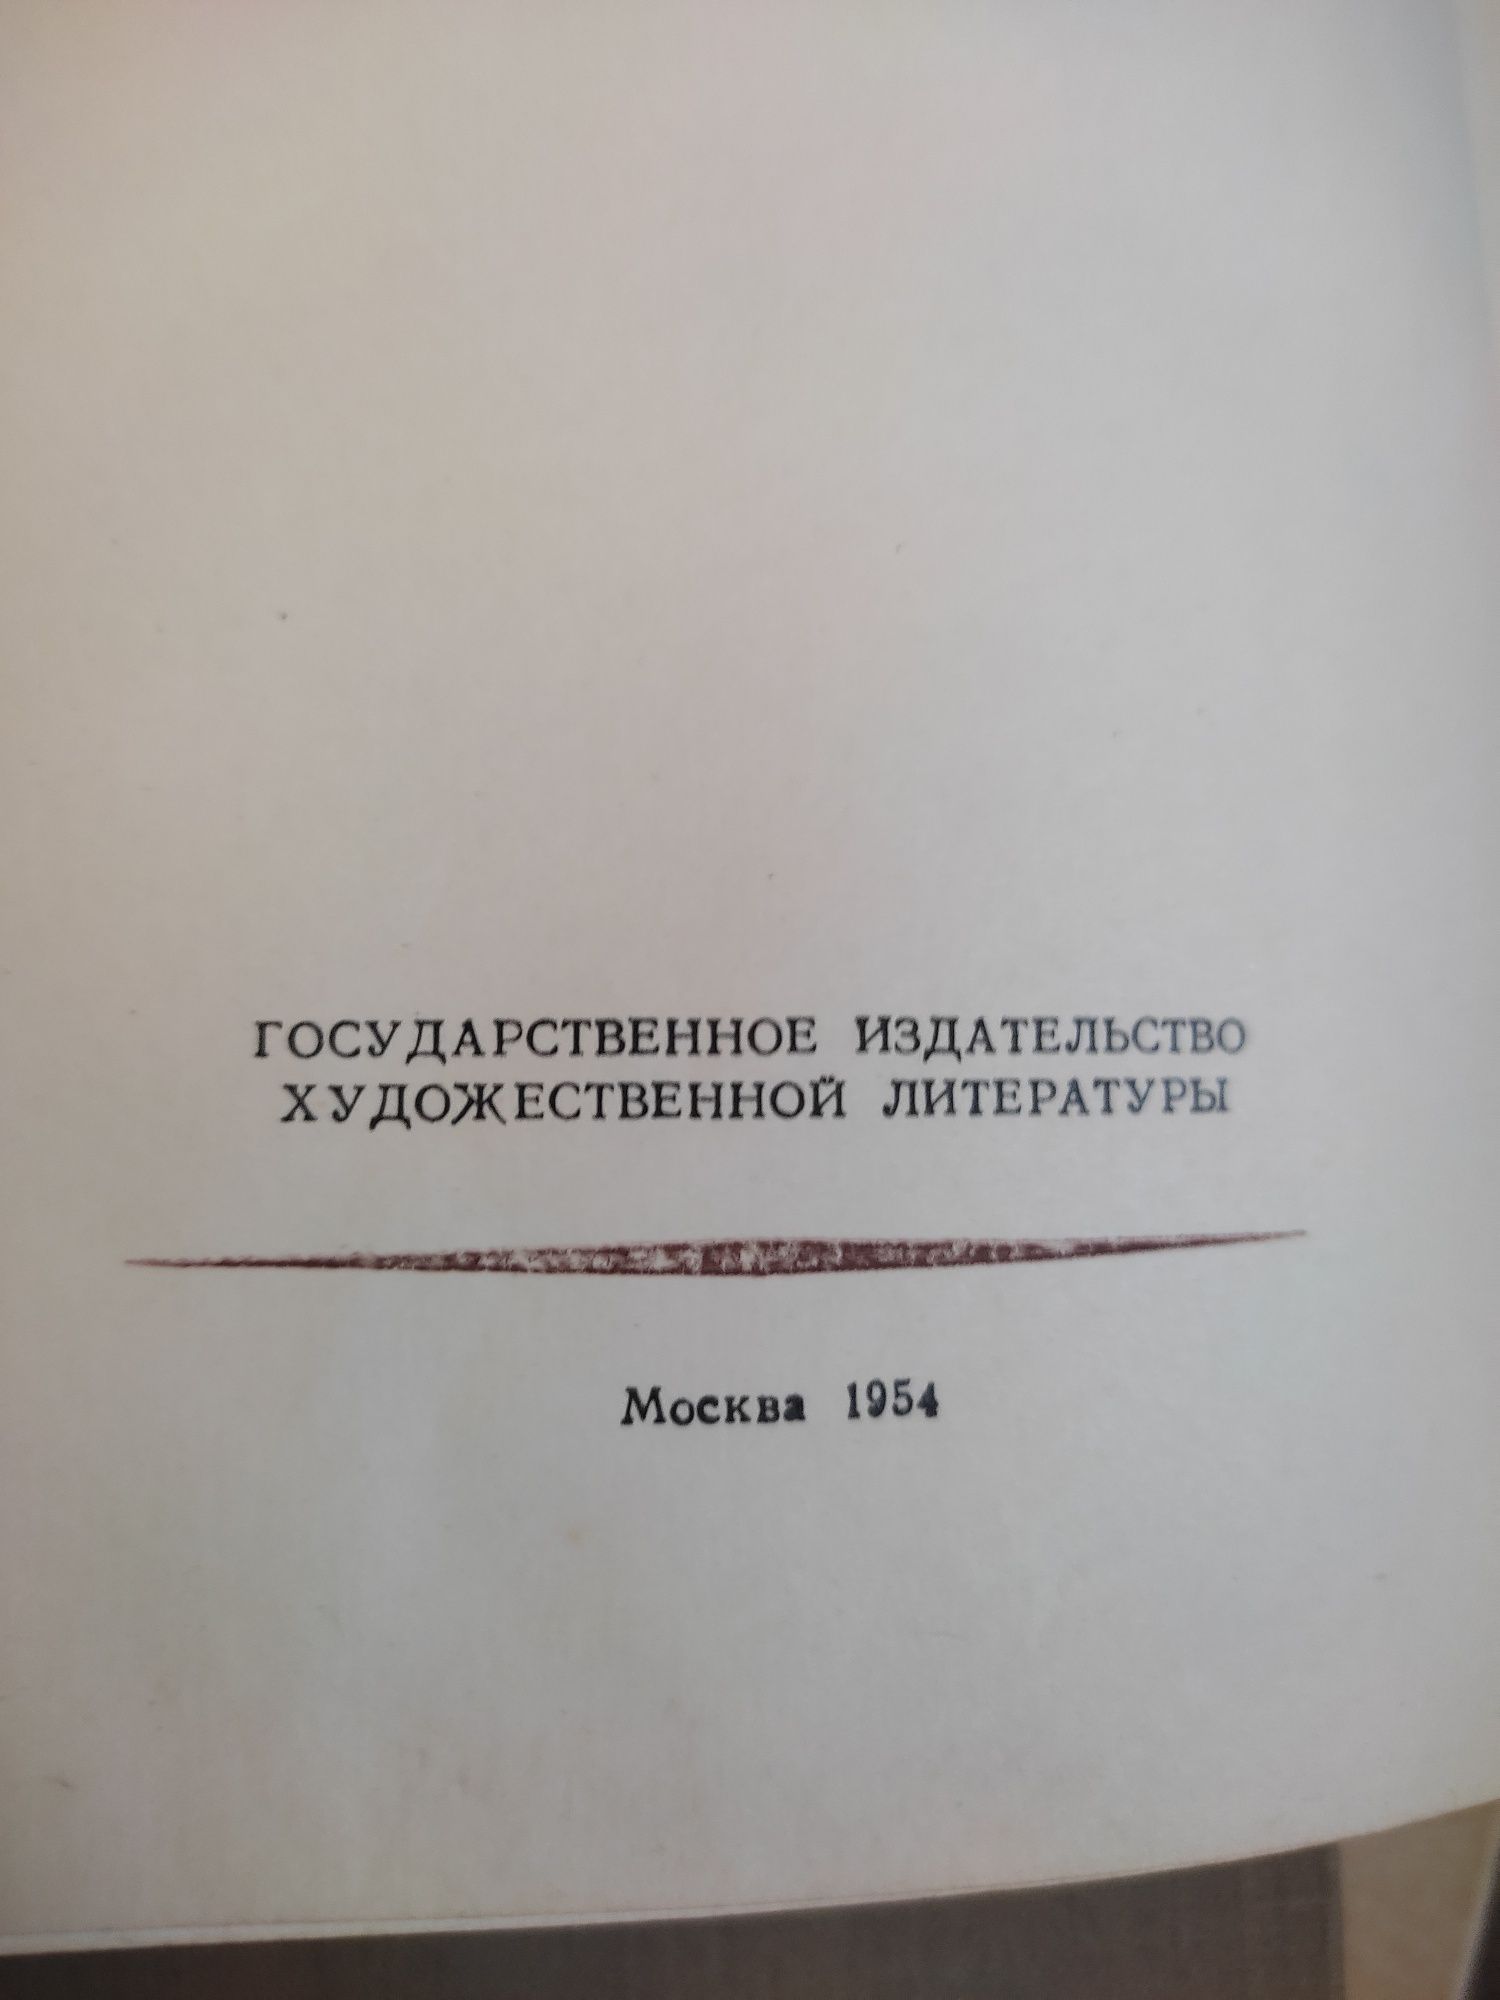 Cărți vechi in romana , opera rusă 1953